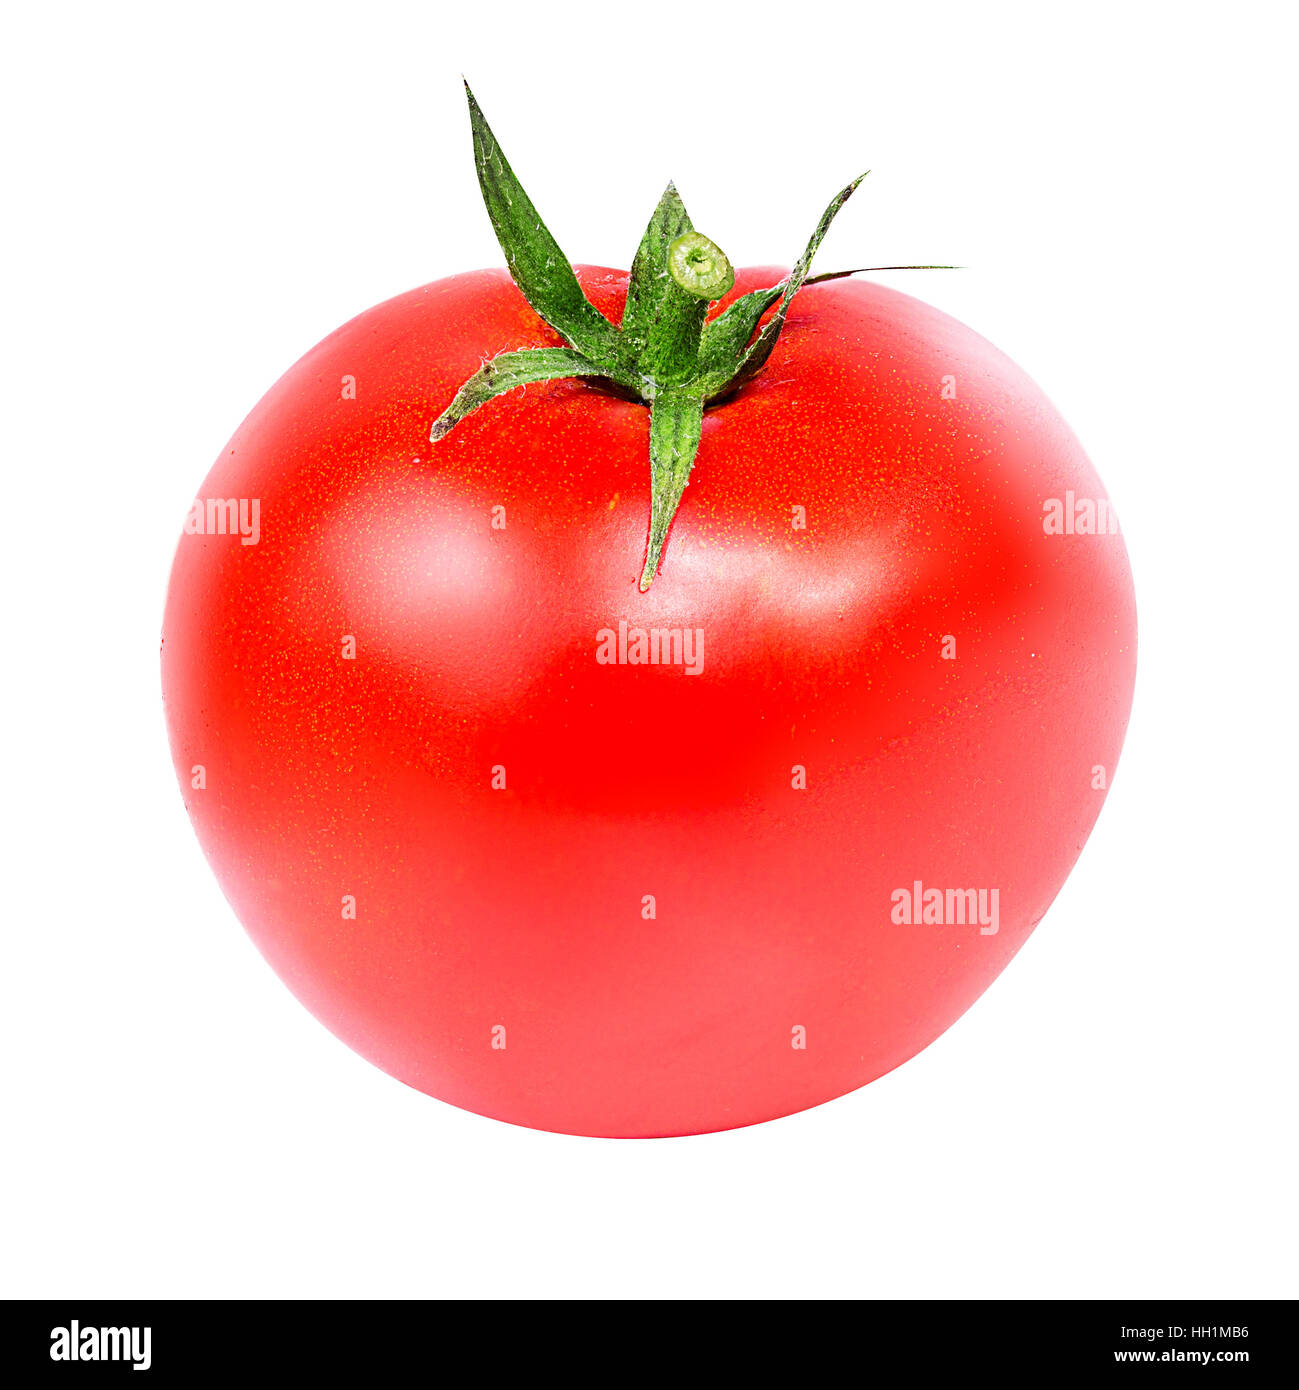 Tomato isolated on white background Stock Photo